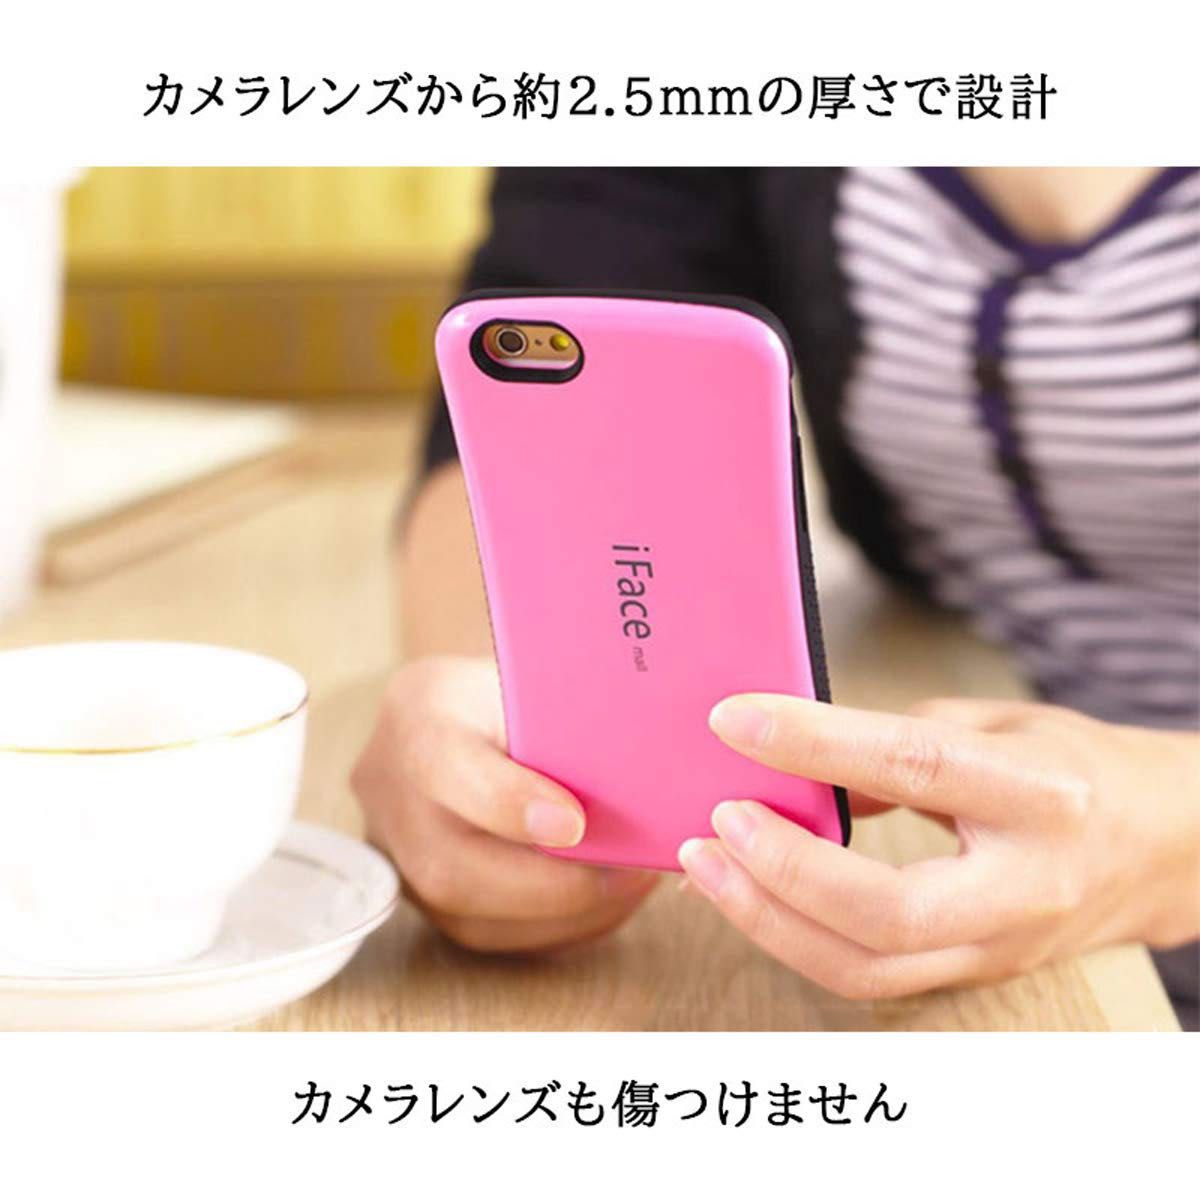 iPhone6/6s スマホケース iPhoneケース ワイヤレス充電対応 ハードケース (ミント)